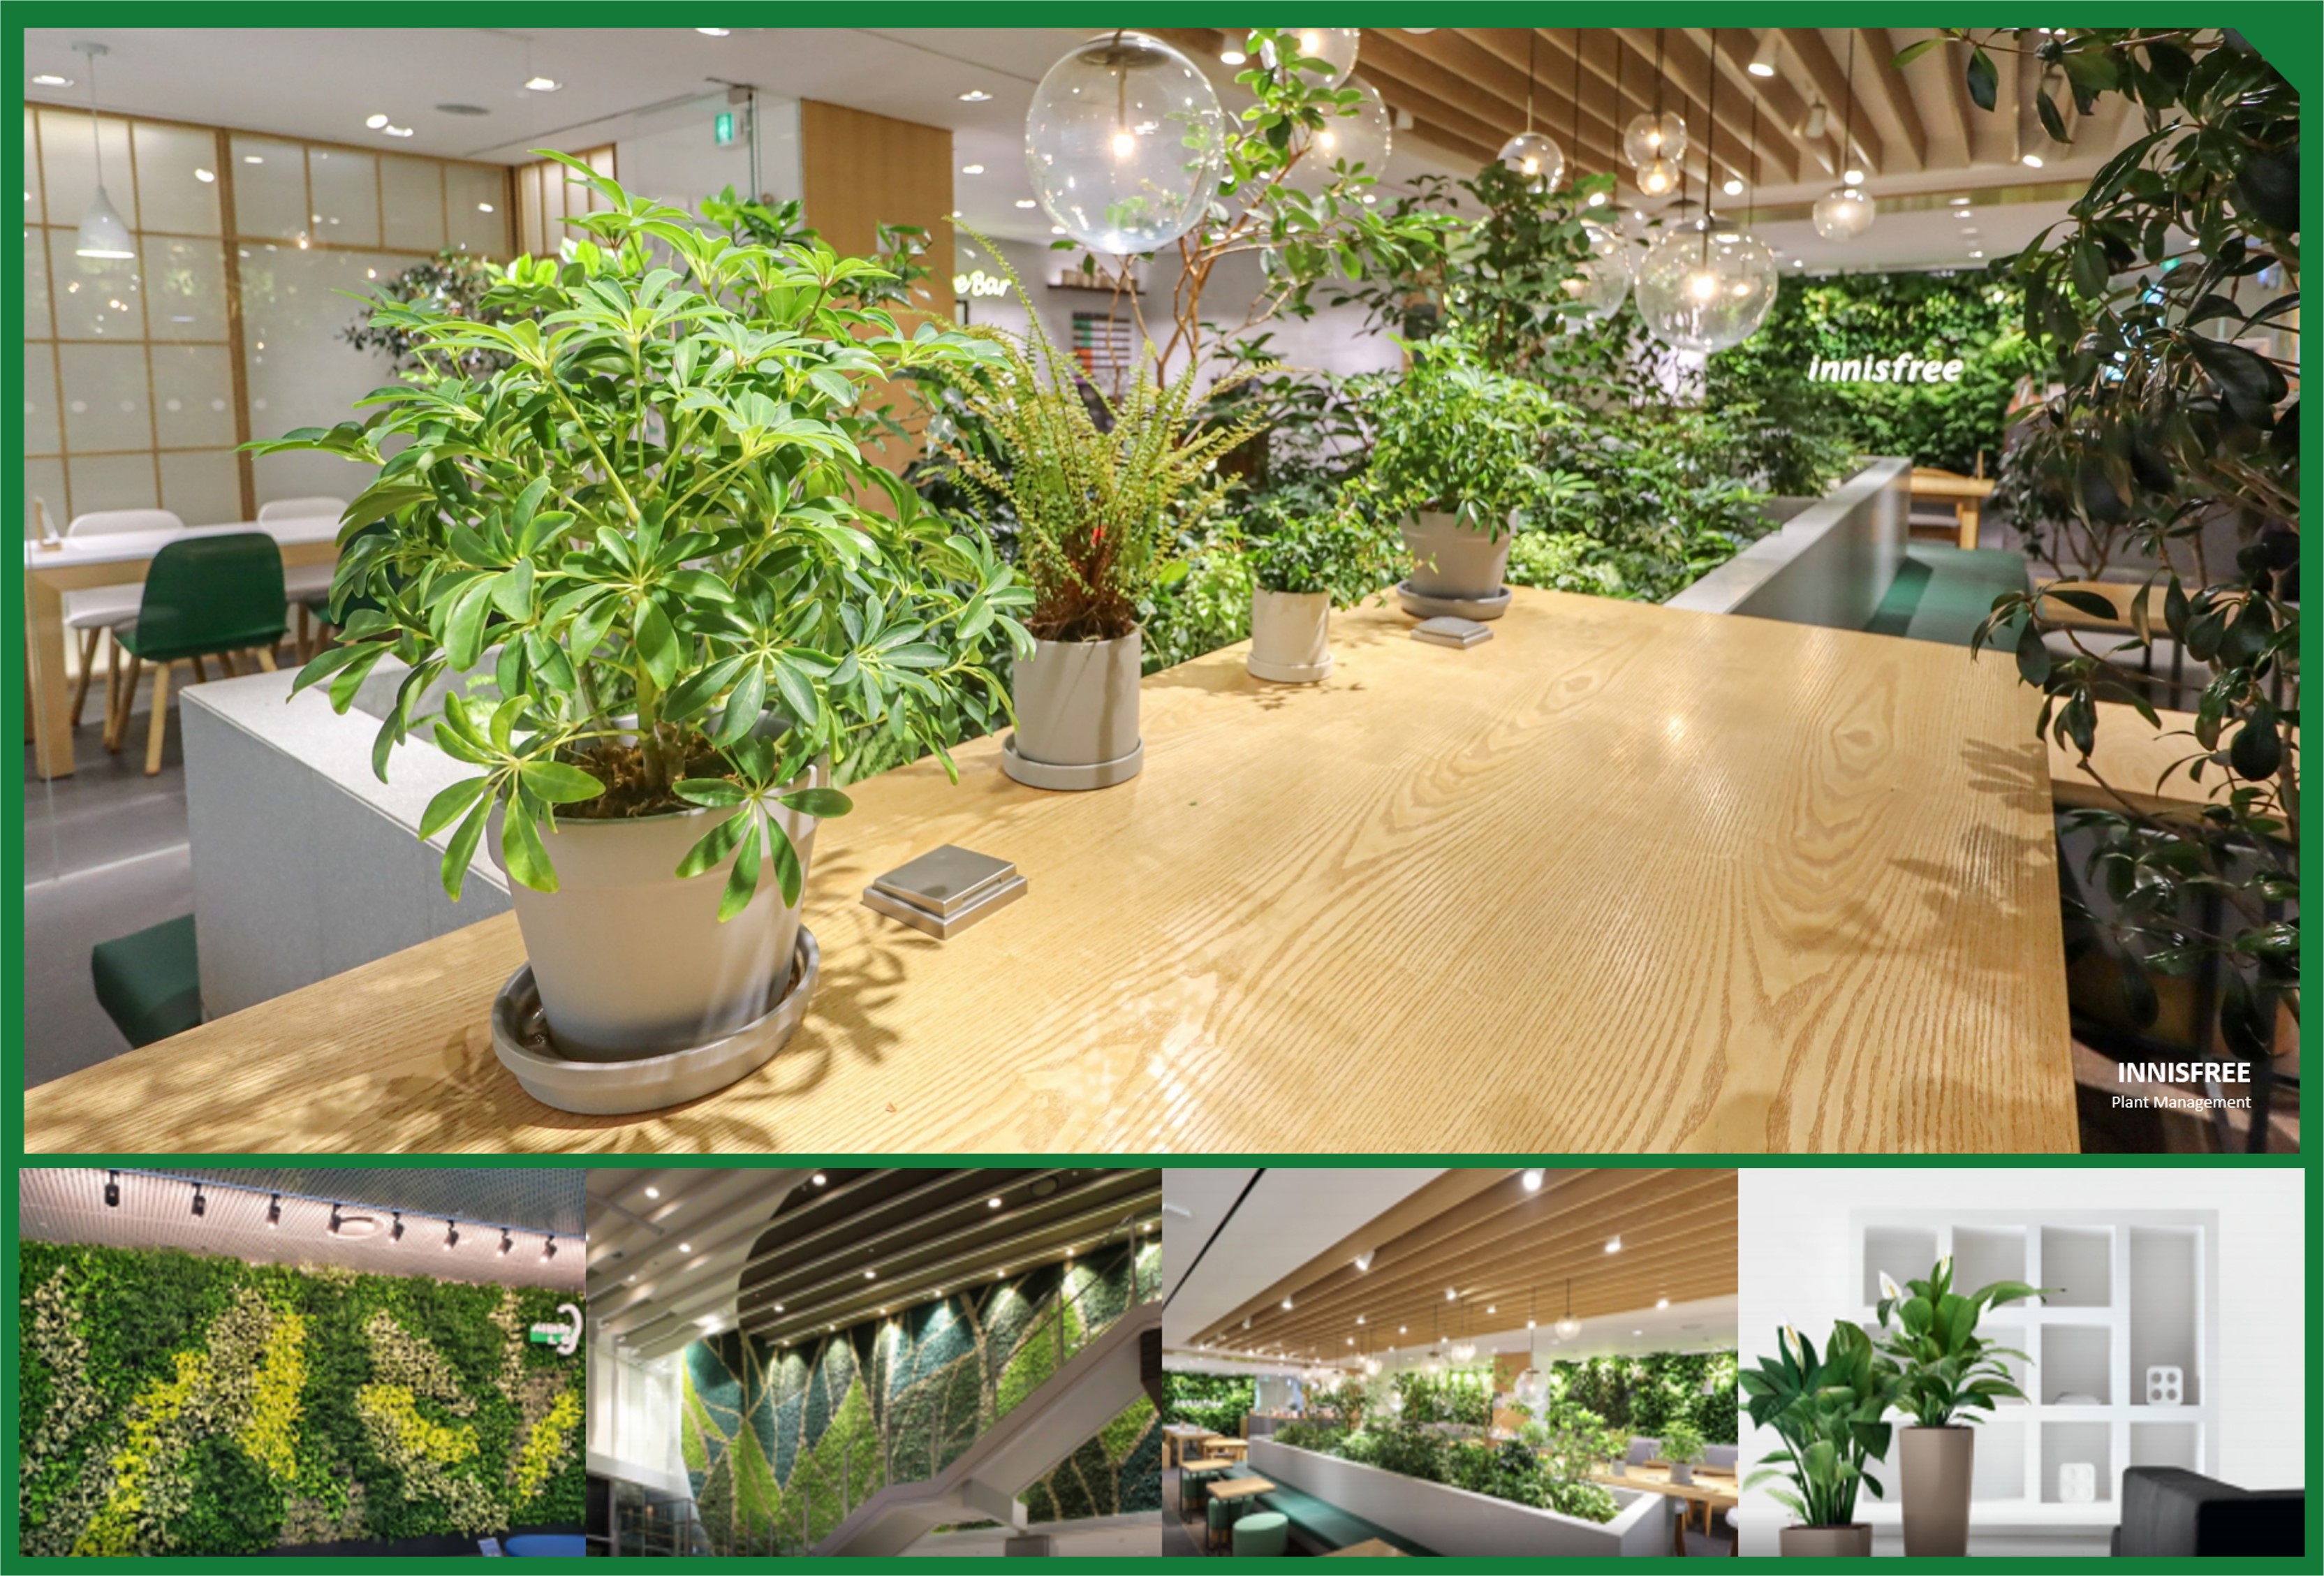 각종 초록색 식물 화분과 정돈된 벽면 식물 조경이 보이는 브라더스키퍼의 식물 인테리어 조경 사업 모습 예시들